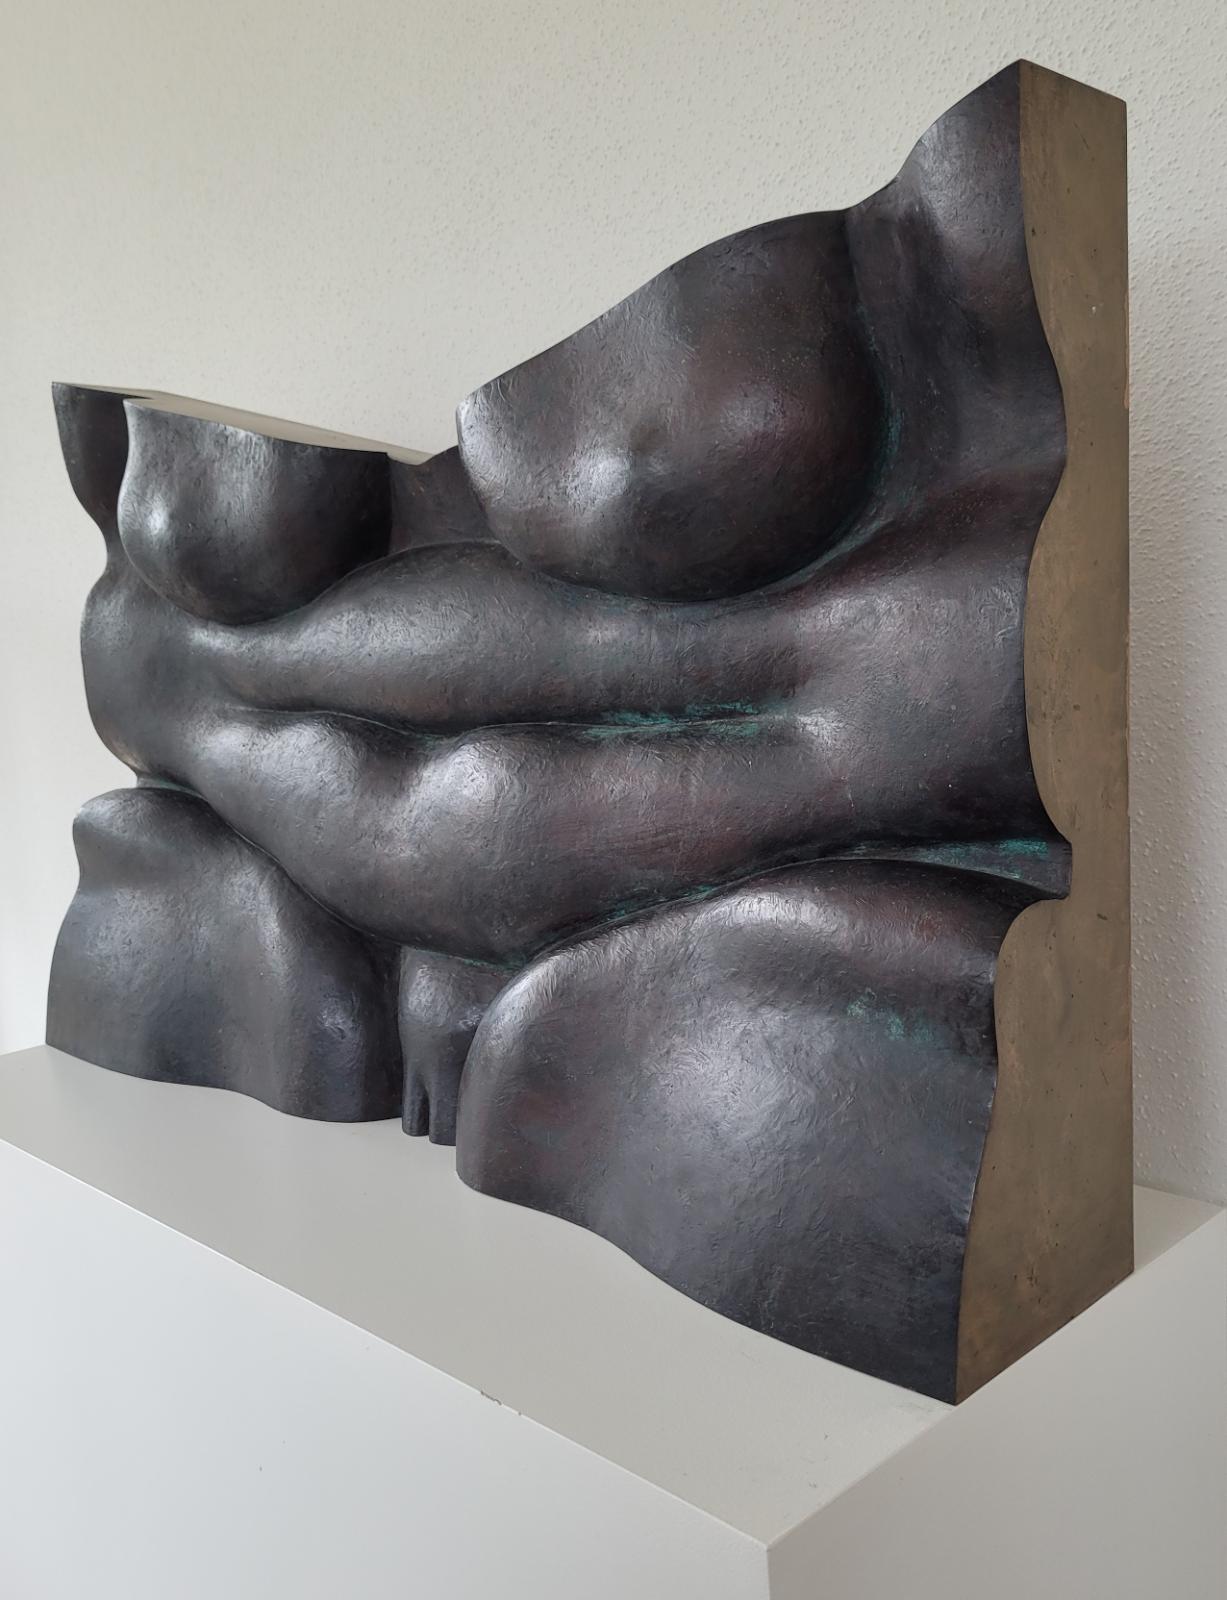 Wilhelm Loth, Neue Figuration, Torso aus konvexen Formen, 1984, Bronze, 50 cm x 82 cm x 15,5 cm, Ansicht 2, Preis auf Anfrage, SüdWestGalerie